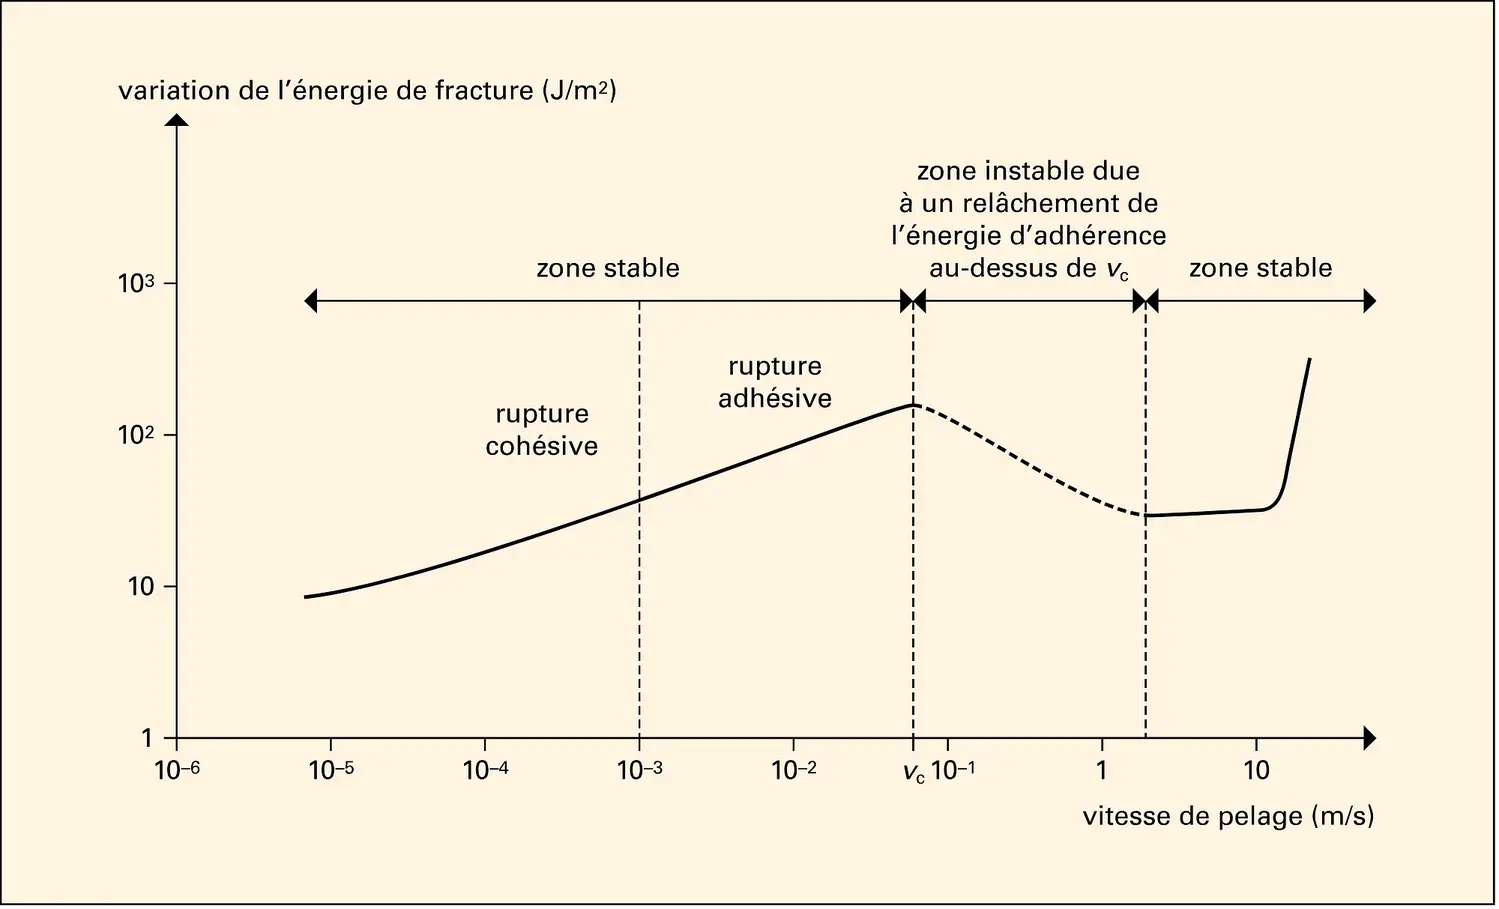 Variation de l'énergie de fracture avec la vitesse de pelage